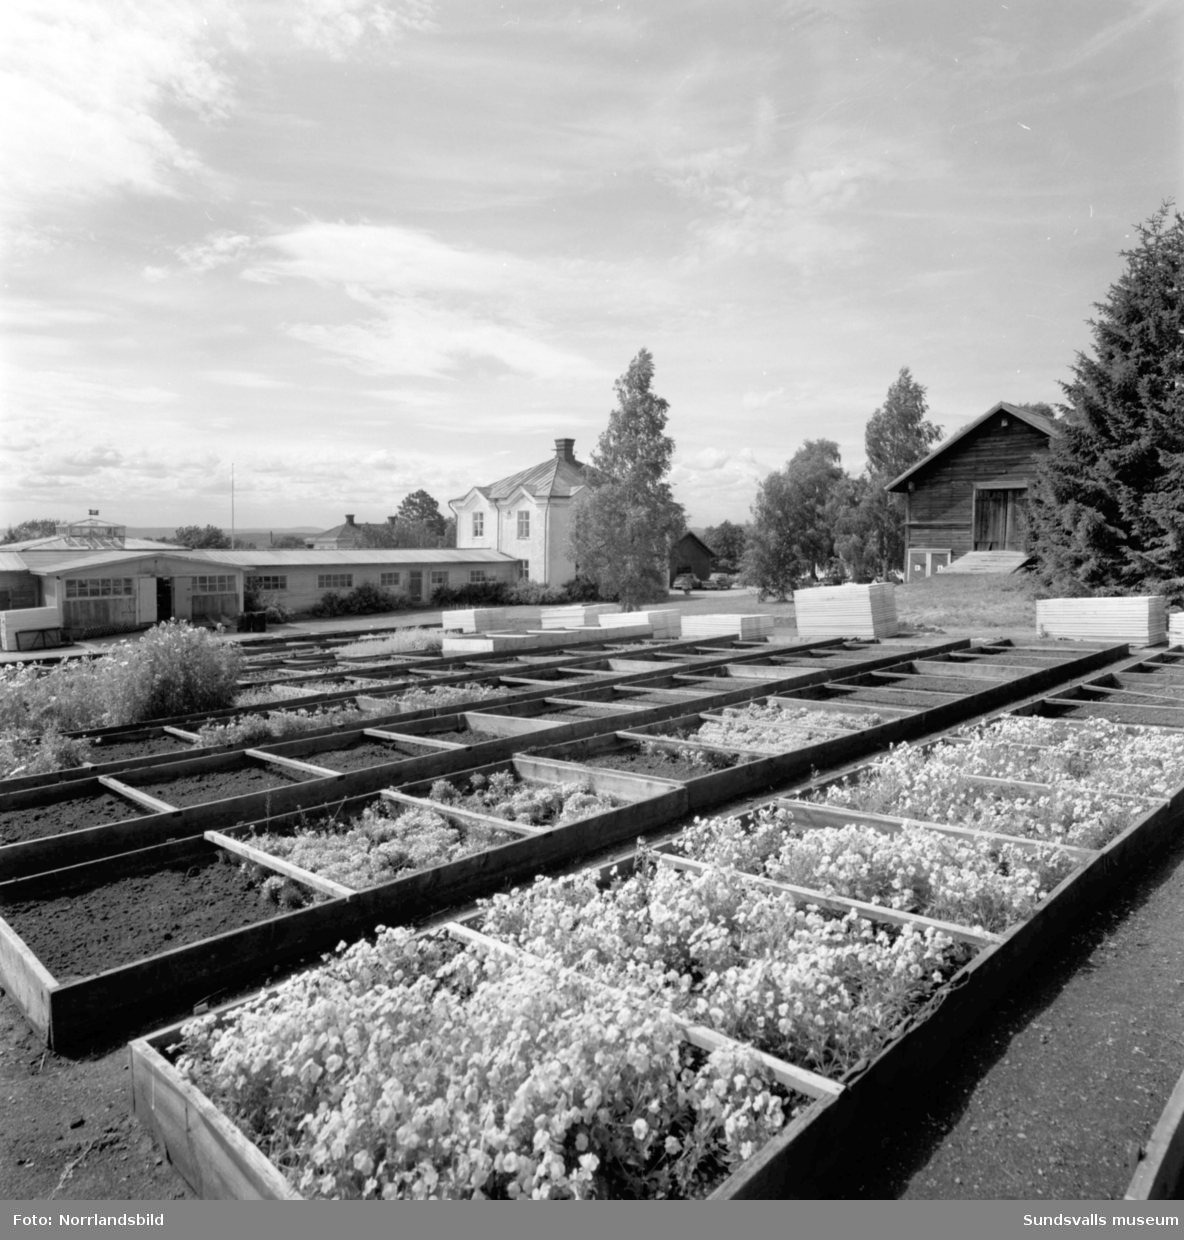 Trädgårdsskolan i Söråker, 1932-1966, disponerade ett stort markområde av det som i dag är centrala Söråker. Huvudbyggnad var den gamla herrgården och skolan odlade köksväxter på 11 hektar mark där det producerades cirka 300 ton per år. Dessutom fanns en stor fruktträdgård, plantskola för fruktträd och prydnadsträd samt flera växthus, till och med ett tropiskt växthus. Allt som producerades såldes för att finansiera verksamheten. Utöver yrkesutbildning för trädgårdsmästare anordnade skolan även kurser för den trädgårdsintresserade allmänheten.